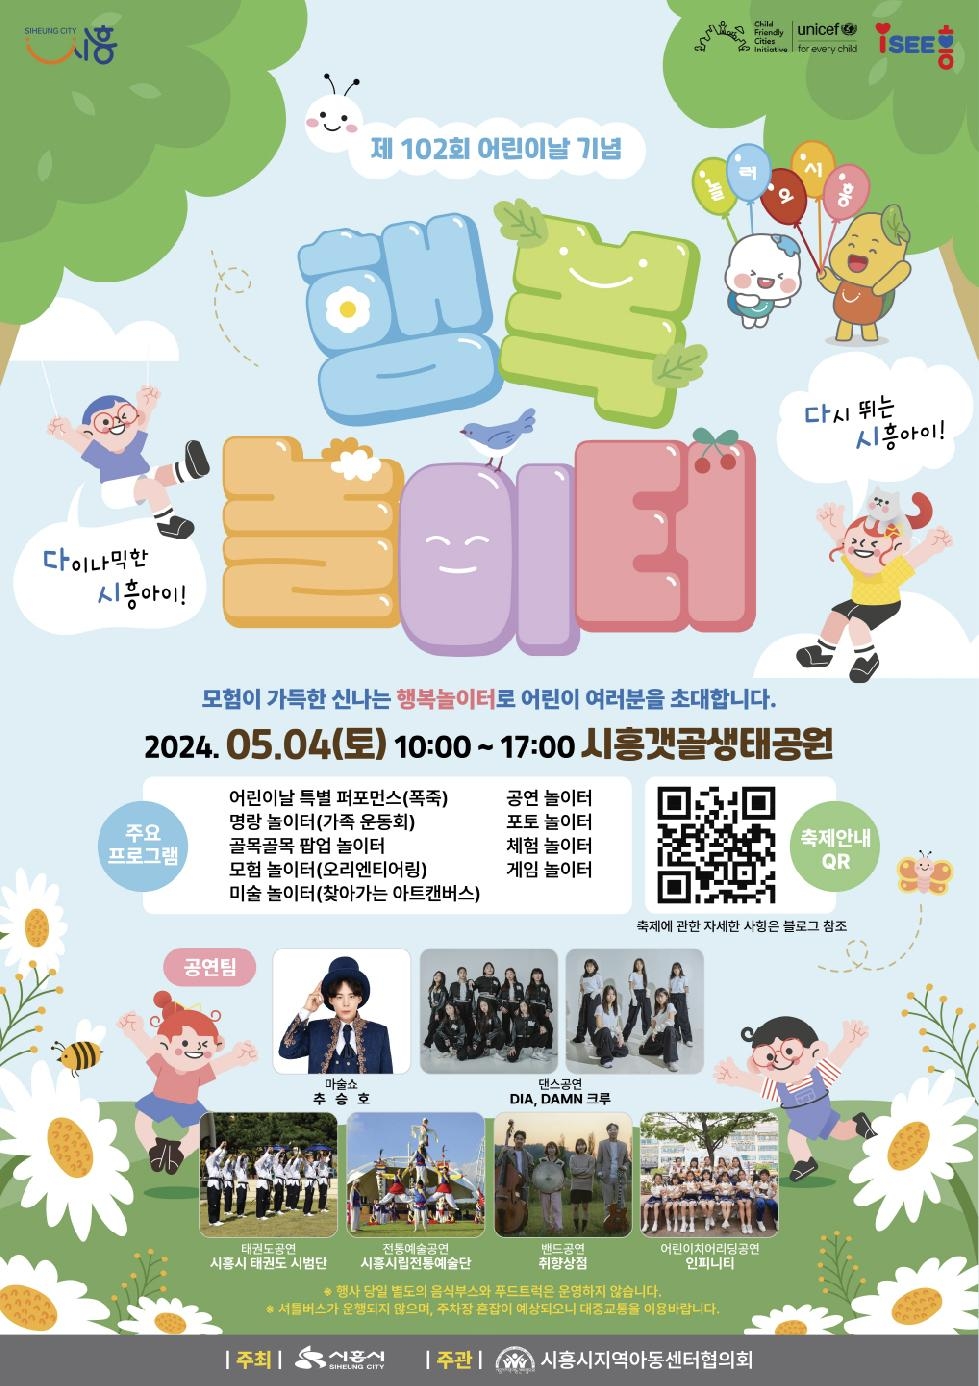 시흥시 어린이날 행사, 5월 4일 시흥갯골생태공원에서 개최...  모험 가득한 신나는 행복